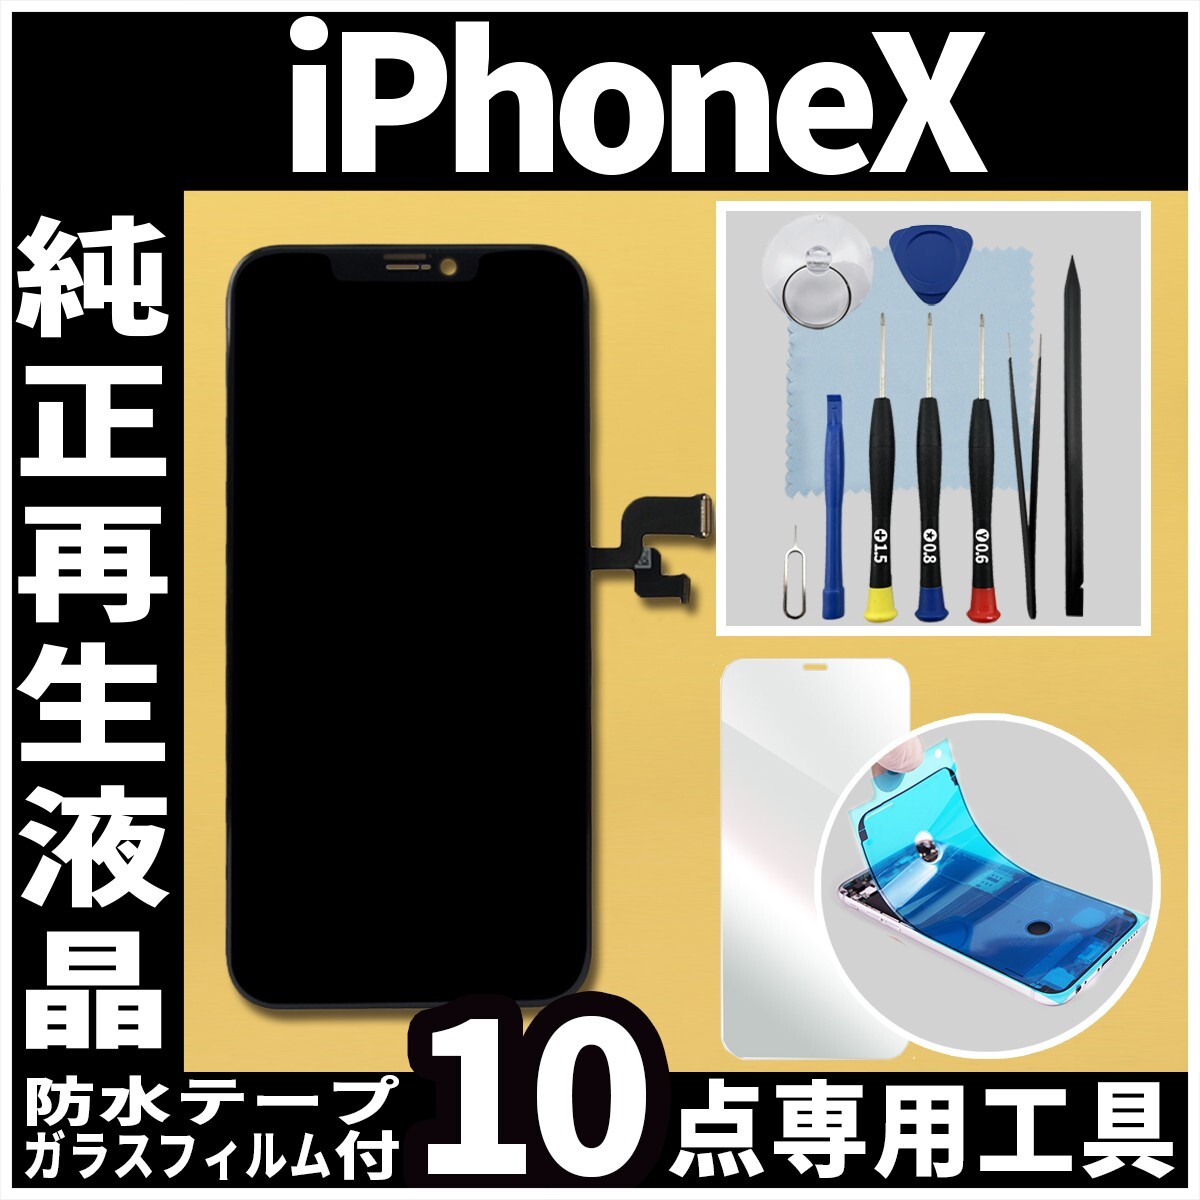 フロントパネル iPhoneX 純正再生品 防水テープ 純正液晶 修理工具 再生 リペア 画面割れ 液晶 修理 iphone ガラス割れ ディスプレイ